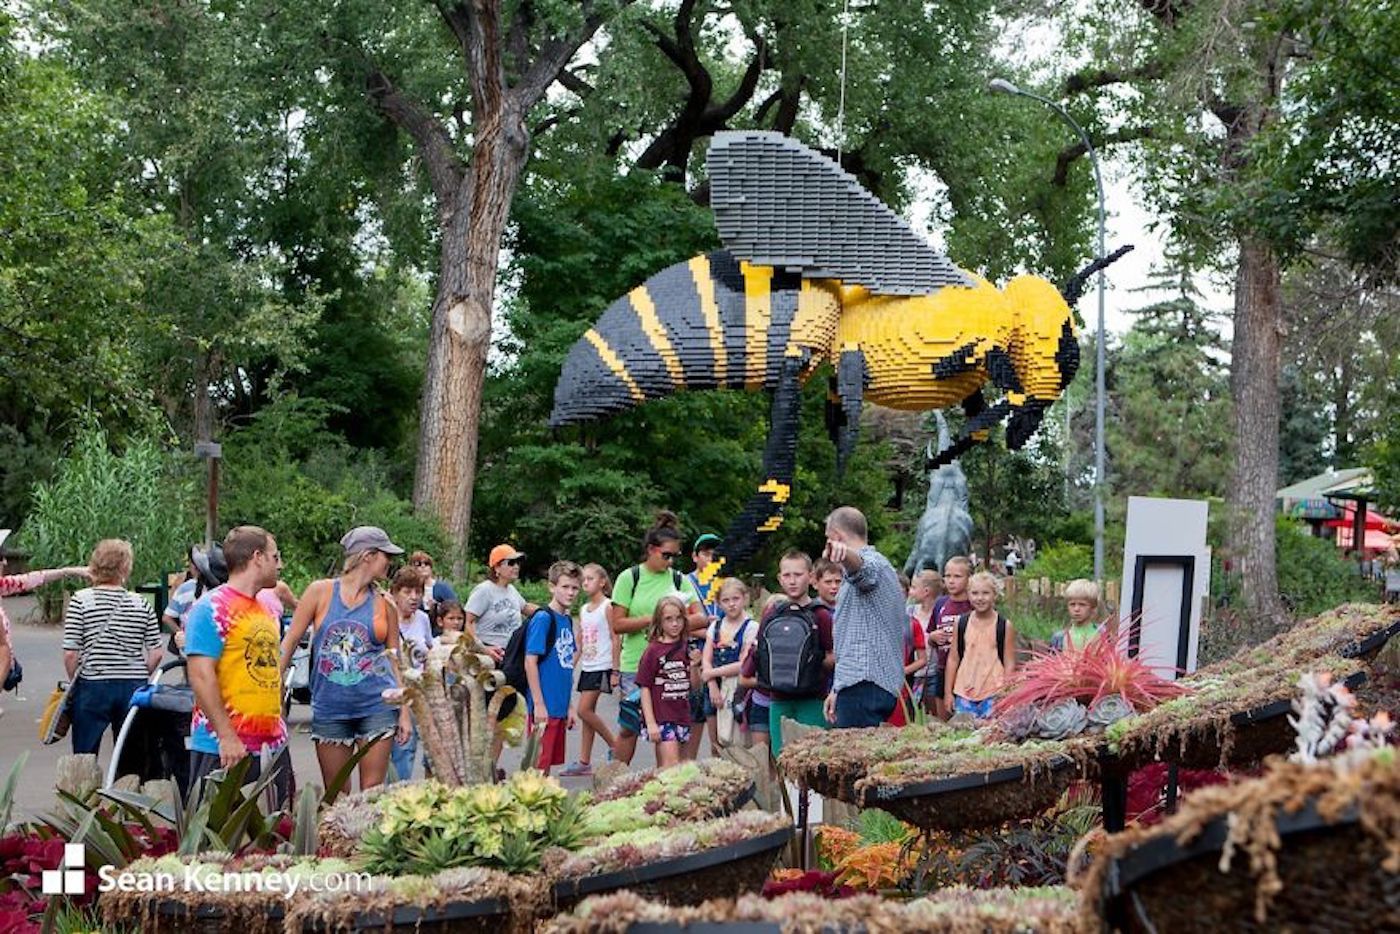 Le zoo de San Antonio dévoile des répliques d'animaux avec des millions de LEGO